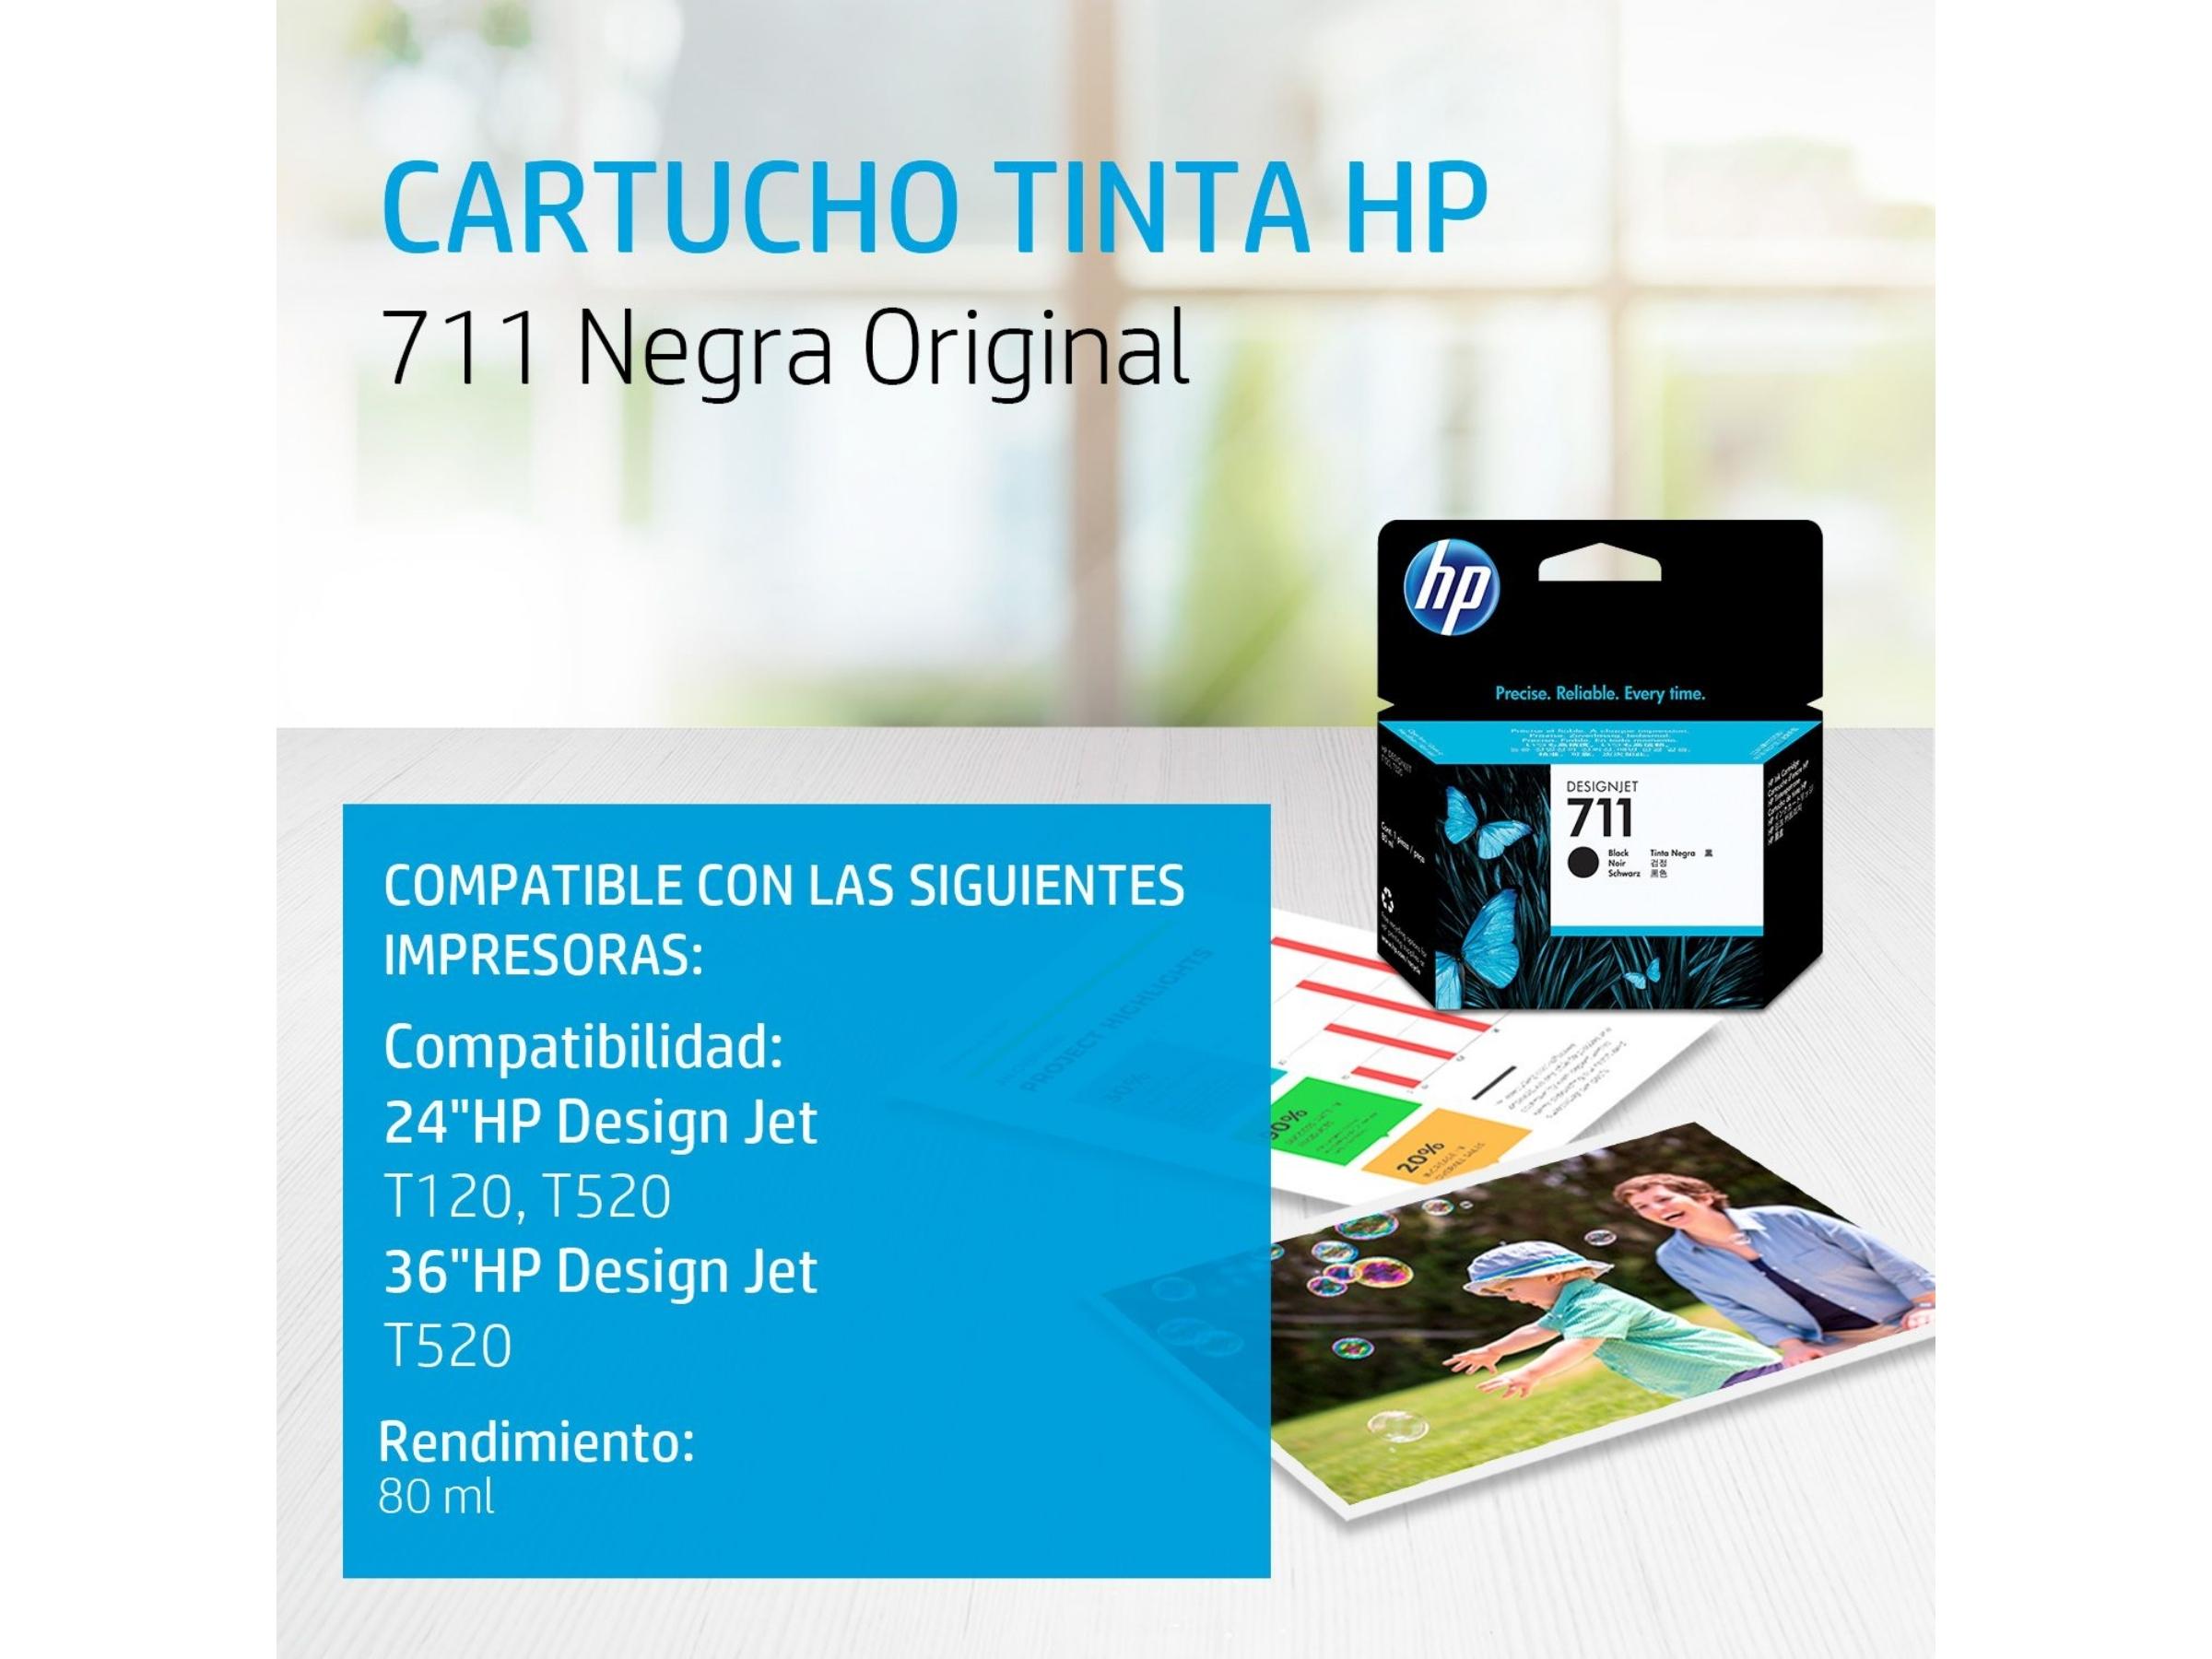 CARTUCHO DE TINTA HP 711 BLACK 80ML (CZ133AL) T120/T520